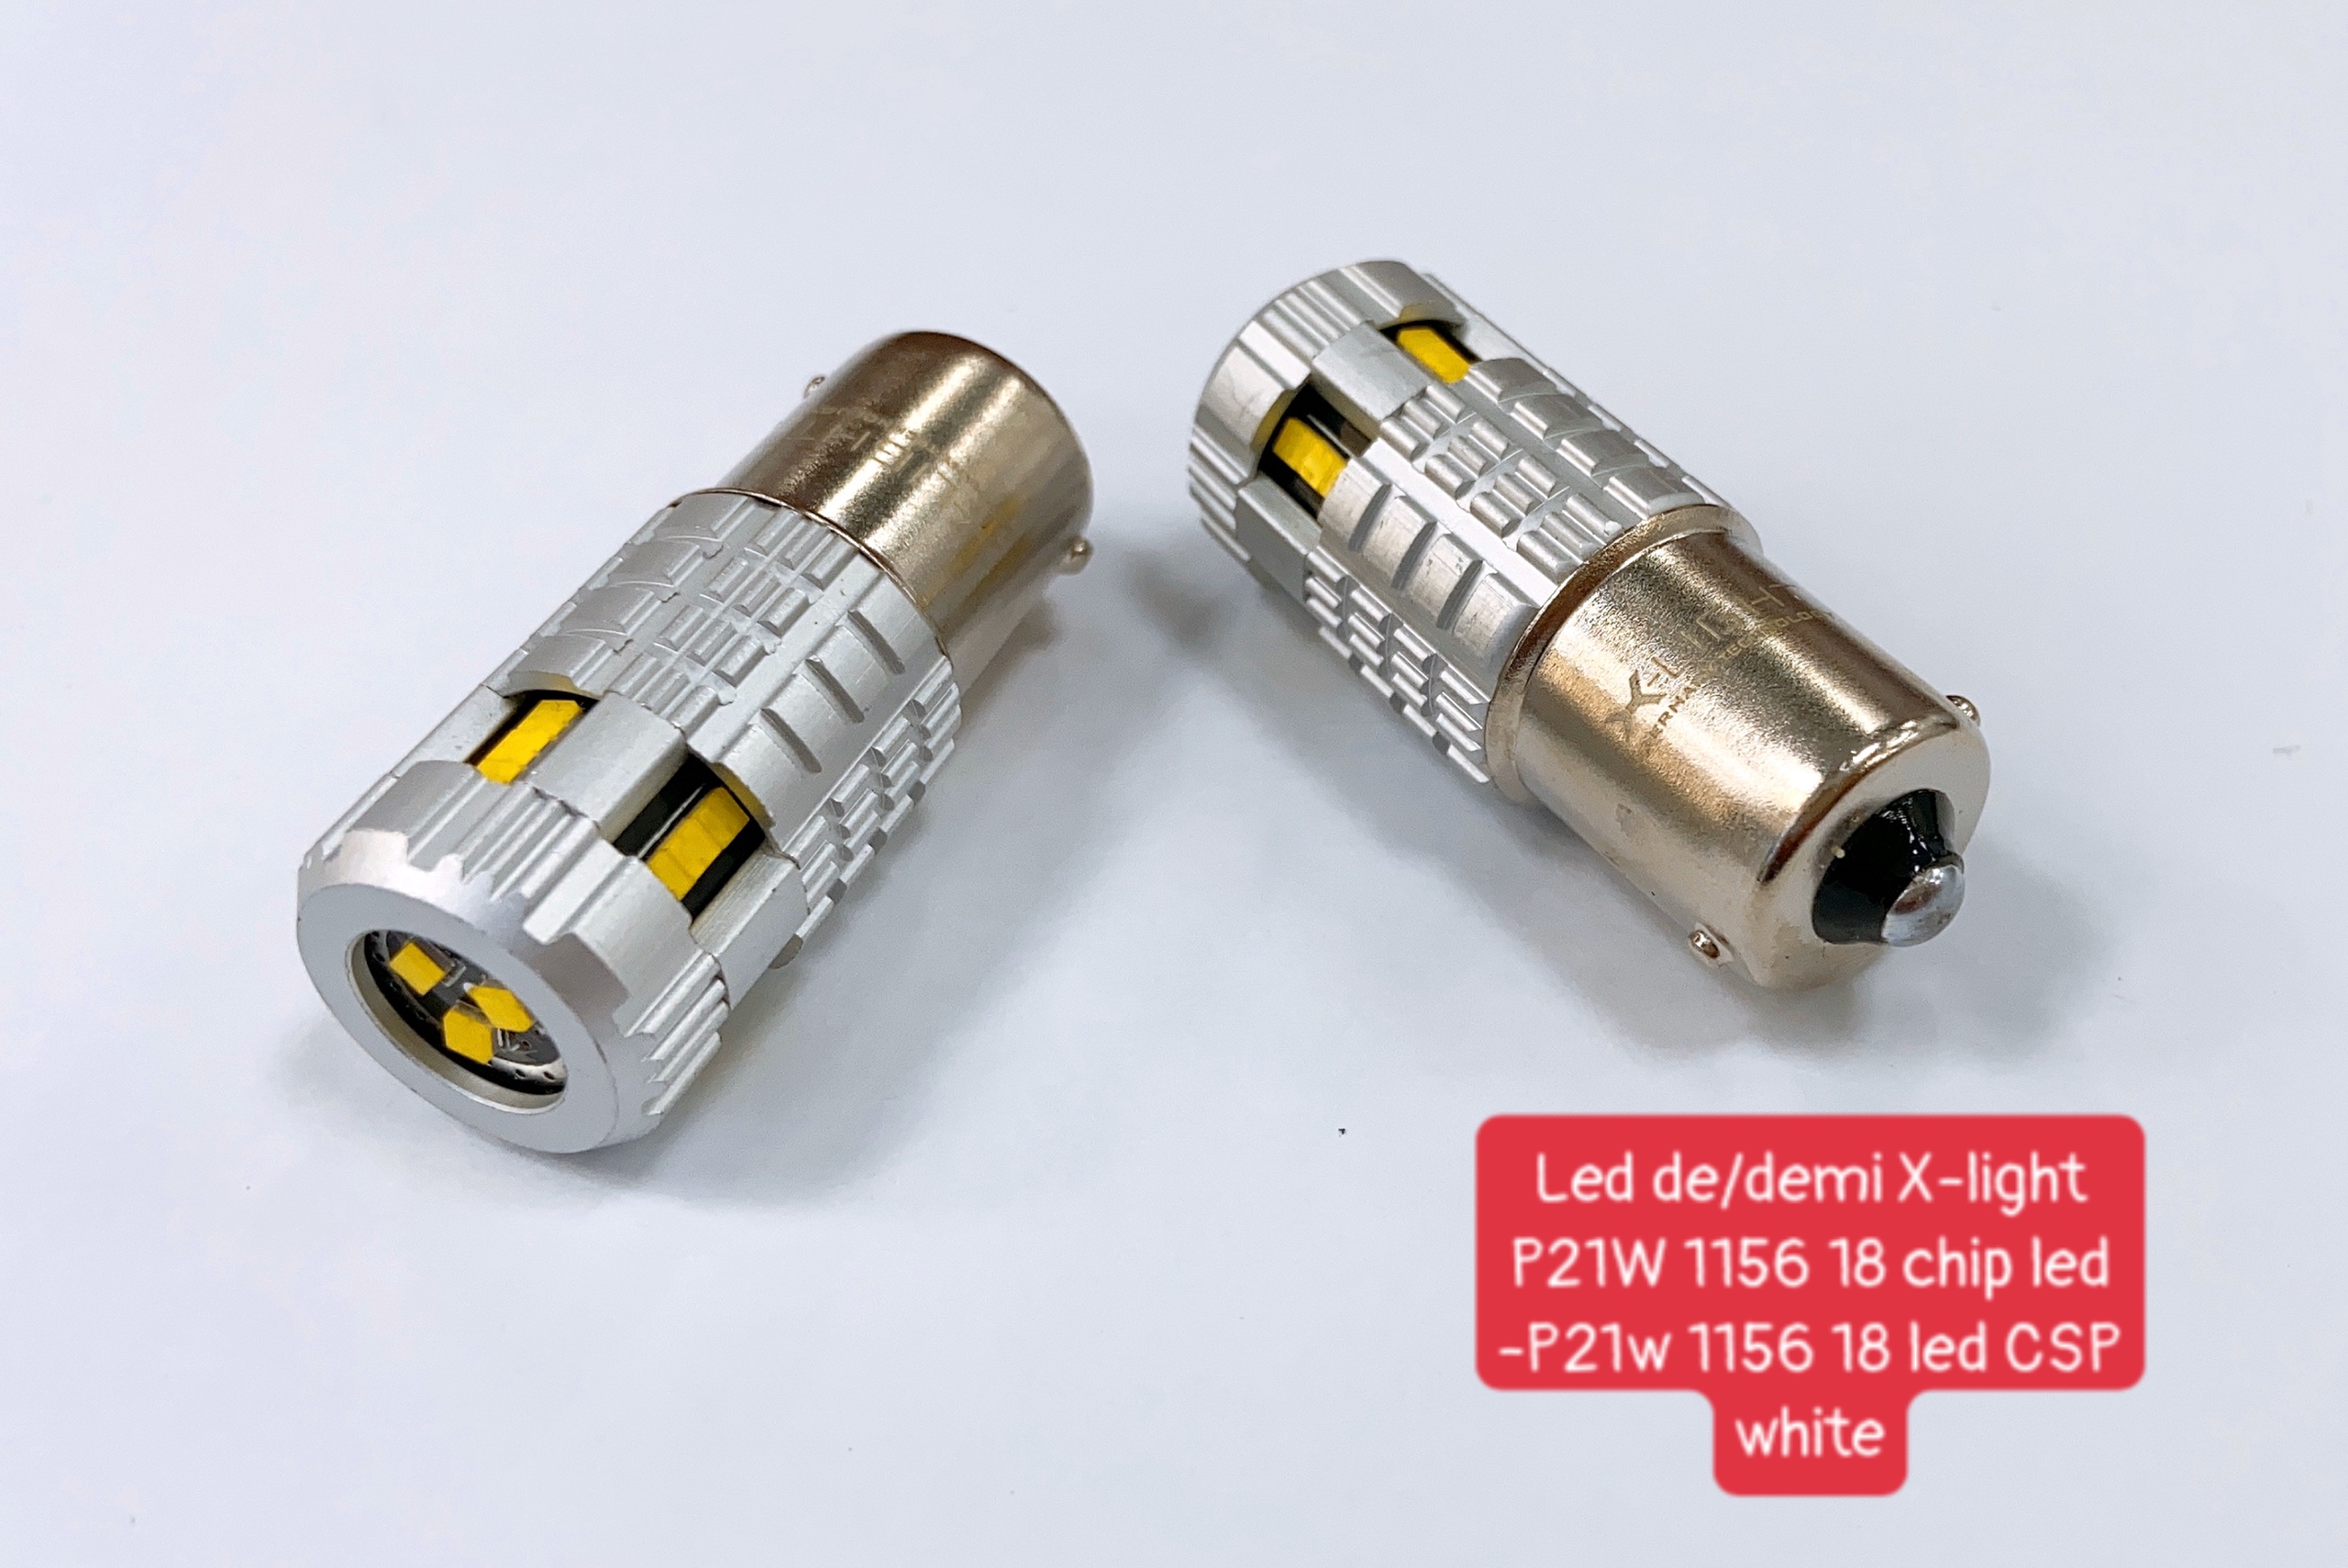 LED DE/DEMI X-LIGHT P21W 1156